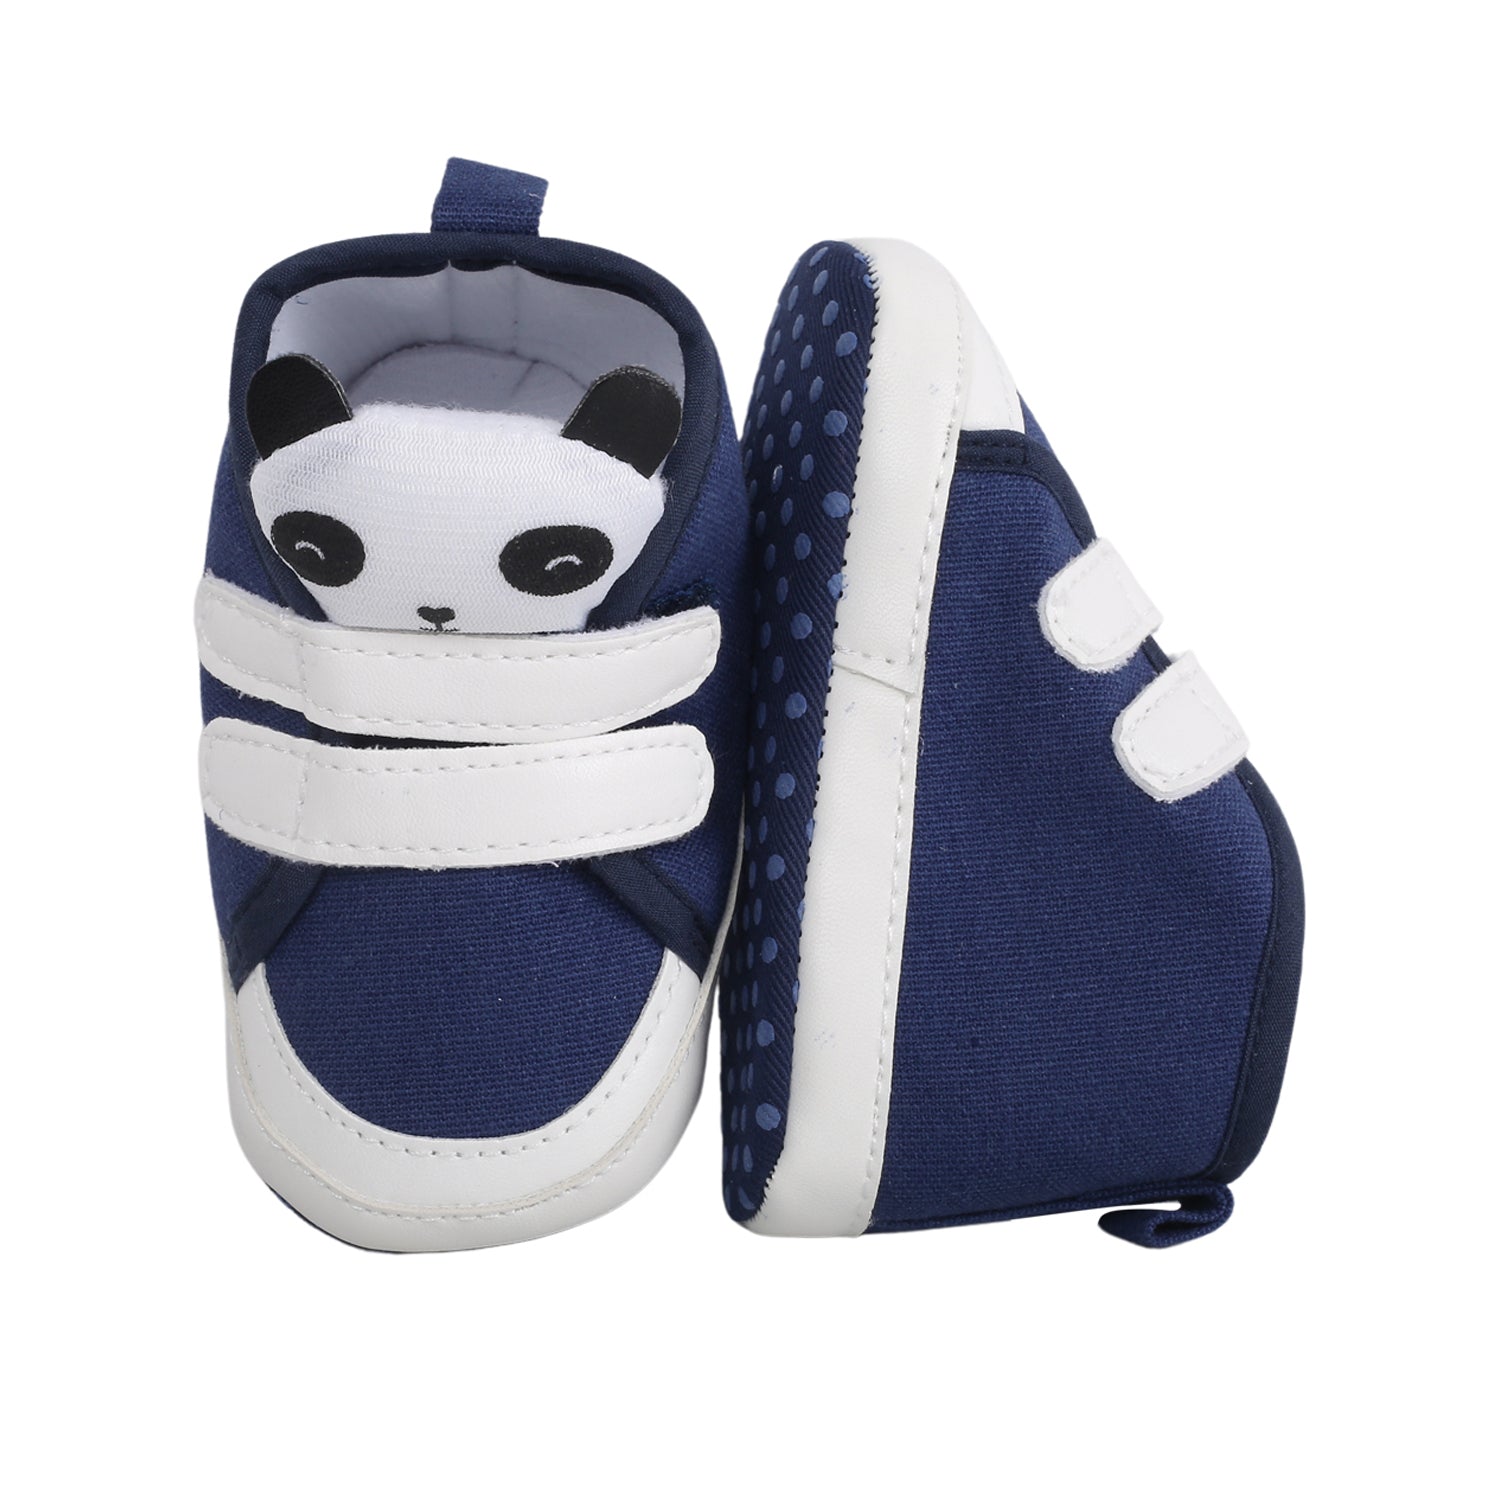 Baby Moo Panda Blue Velcro Booties - Baby Moo